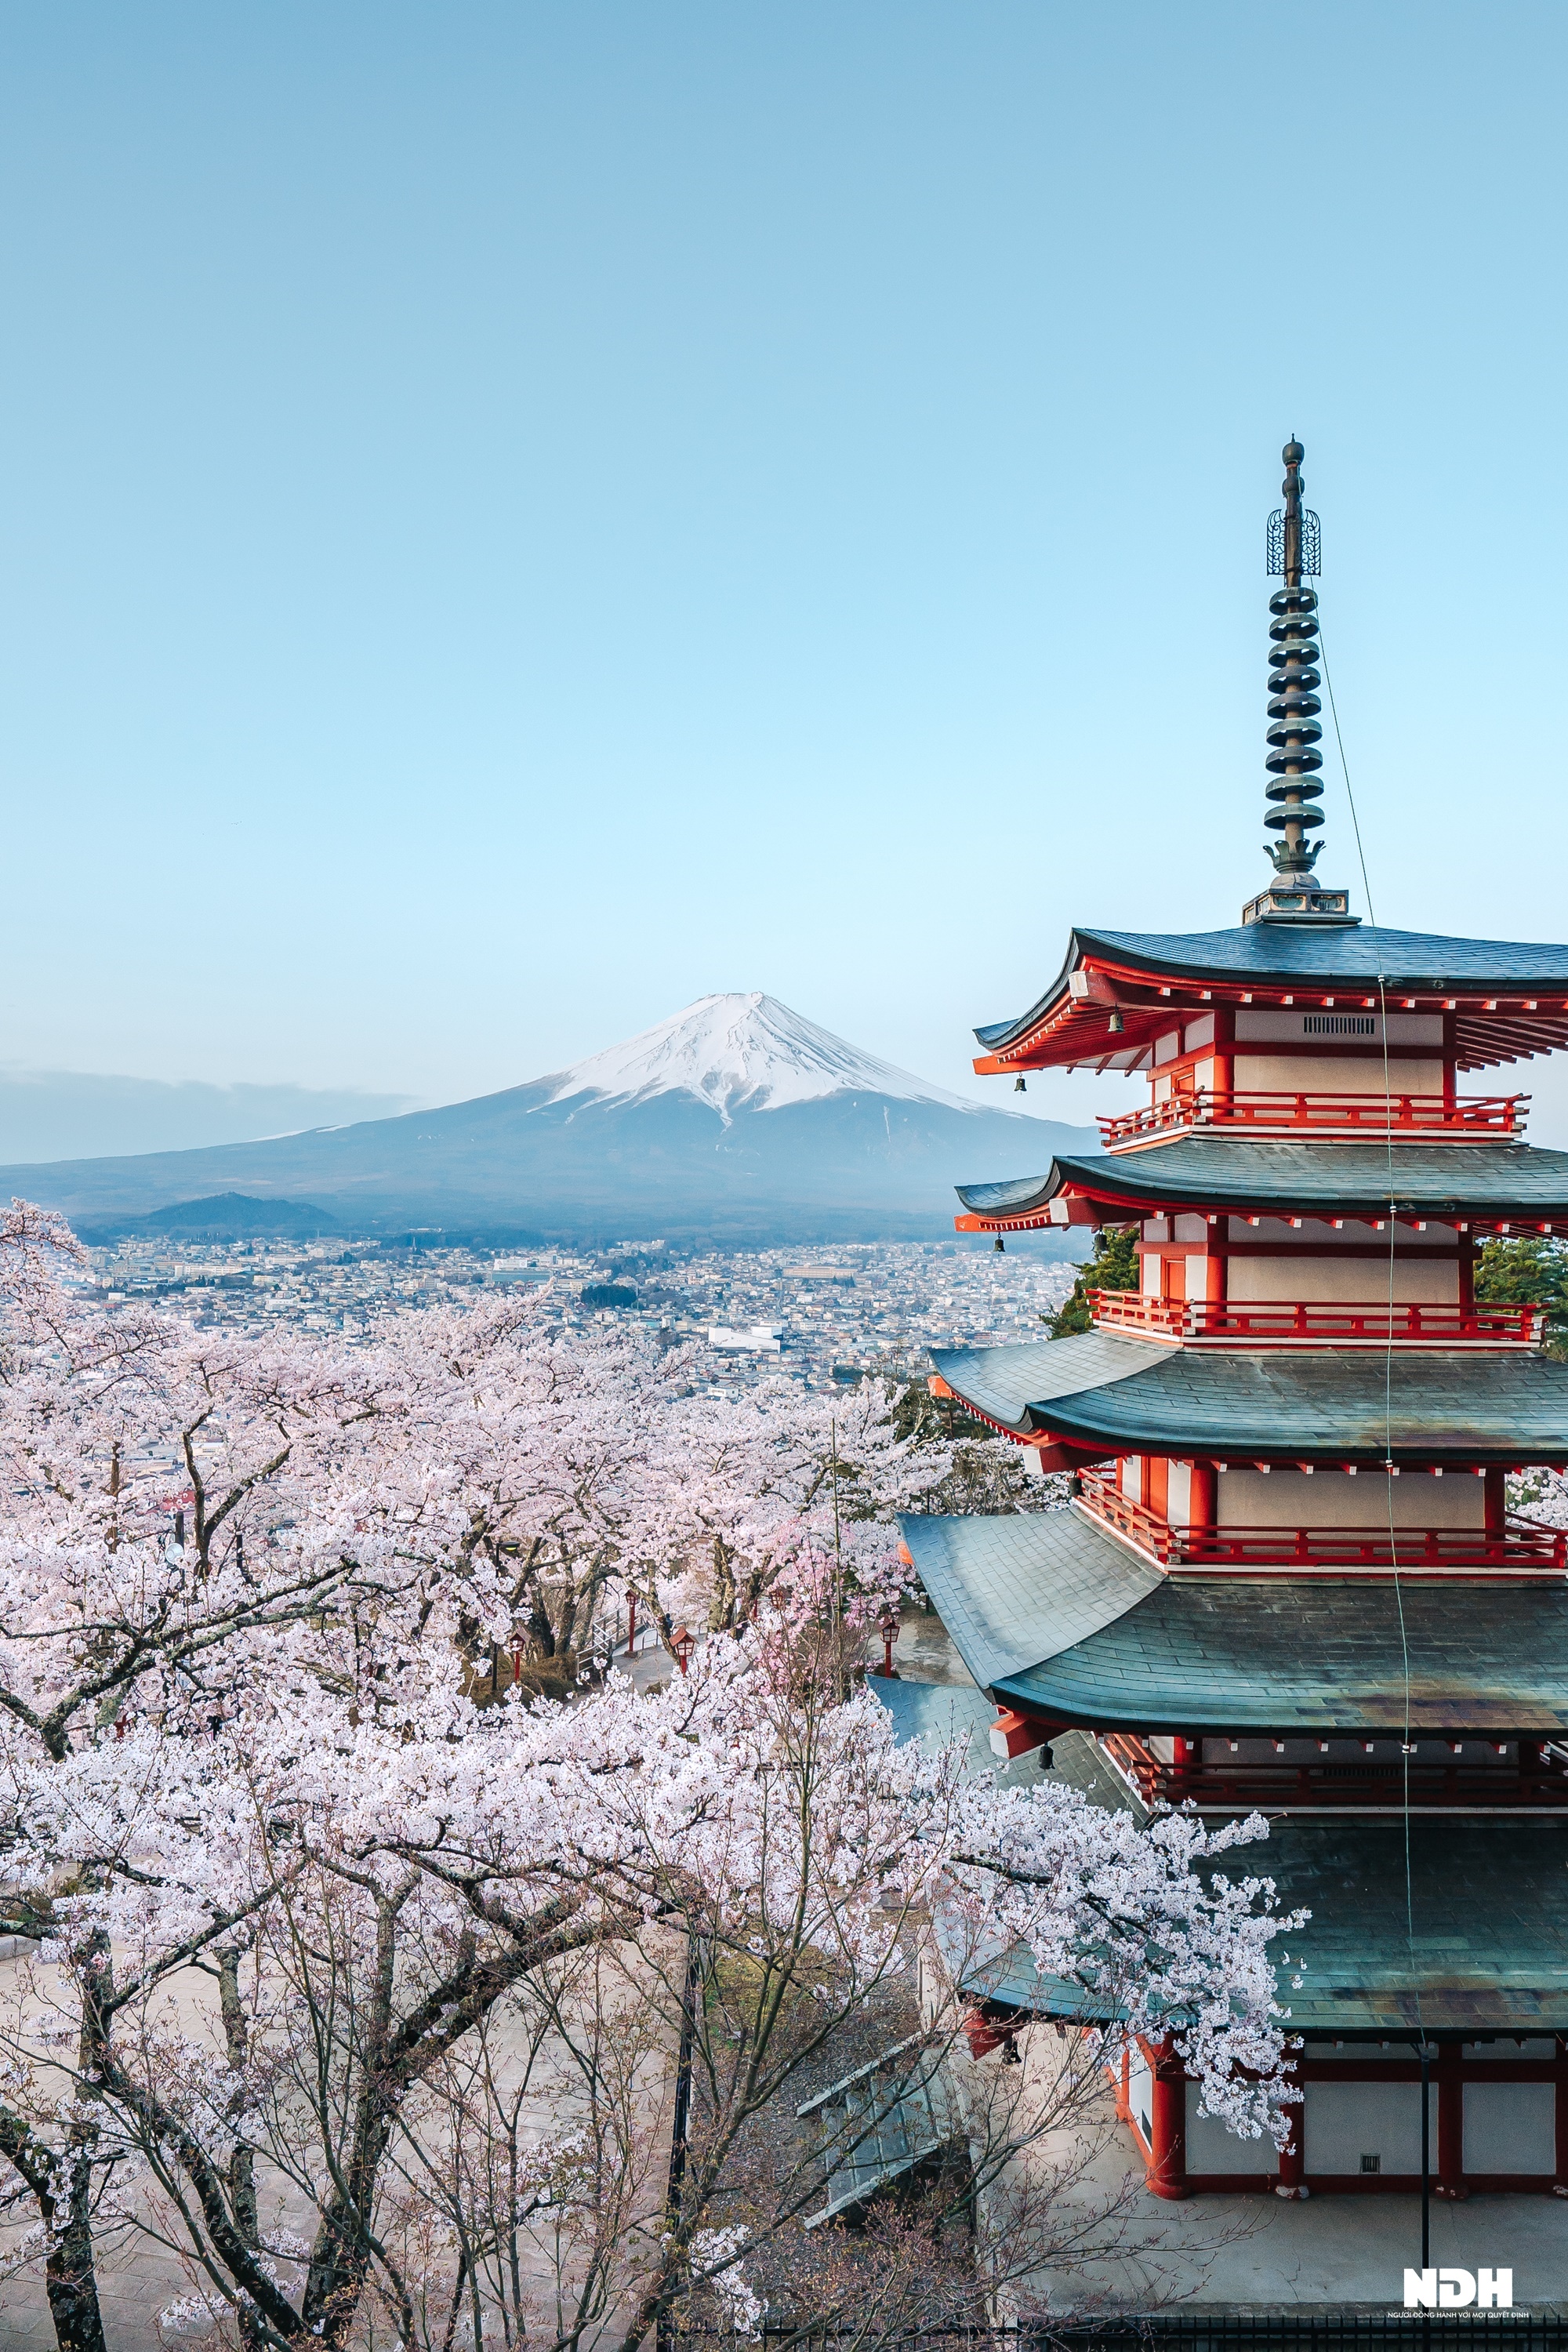 Anh đào Nhật Bản mang đến nét đẹp truyền thống và sự cổ điển với những cánh hoa mỏng manh. Hãy tìm hiểu thêm về nét đẹp ấy trong hình ảnh.